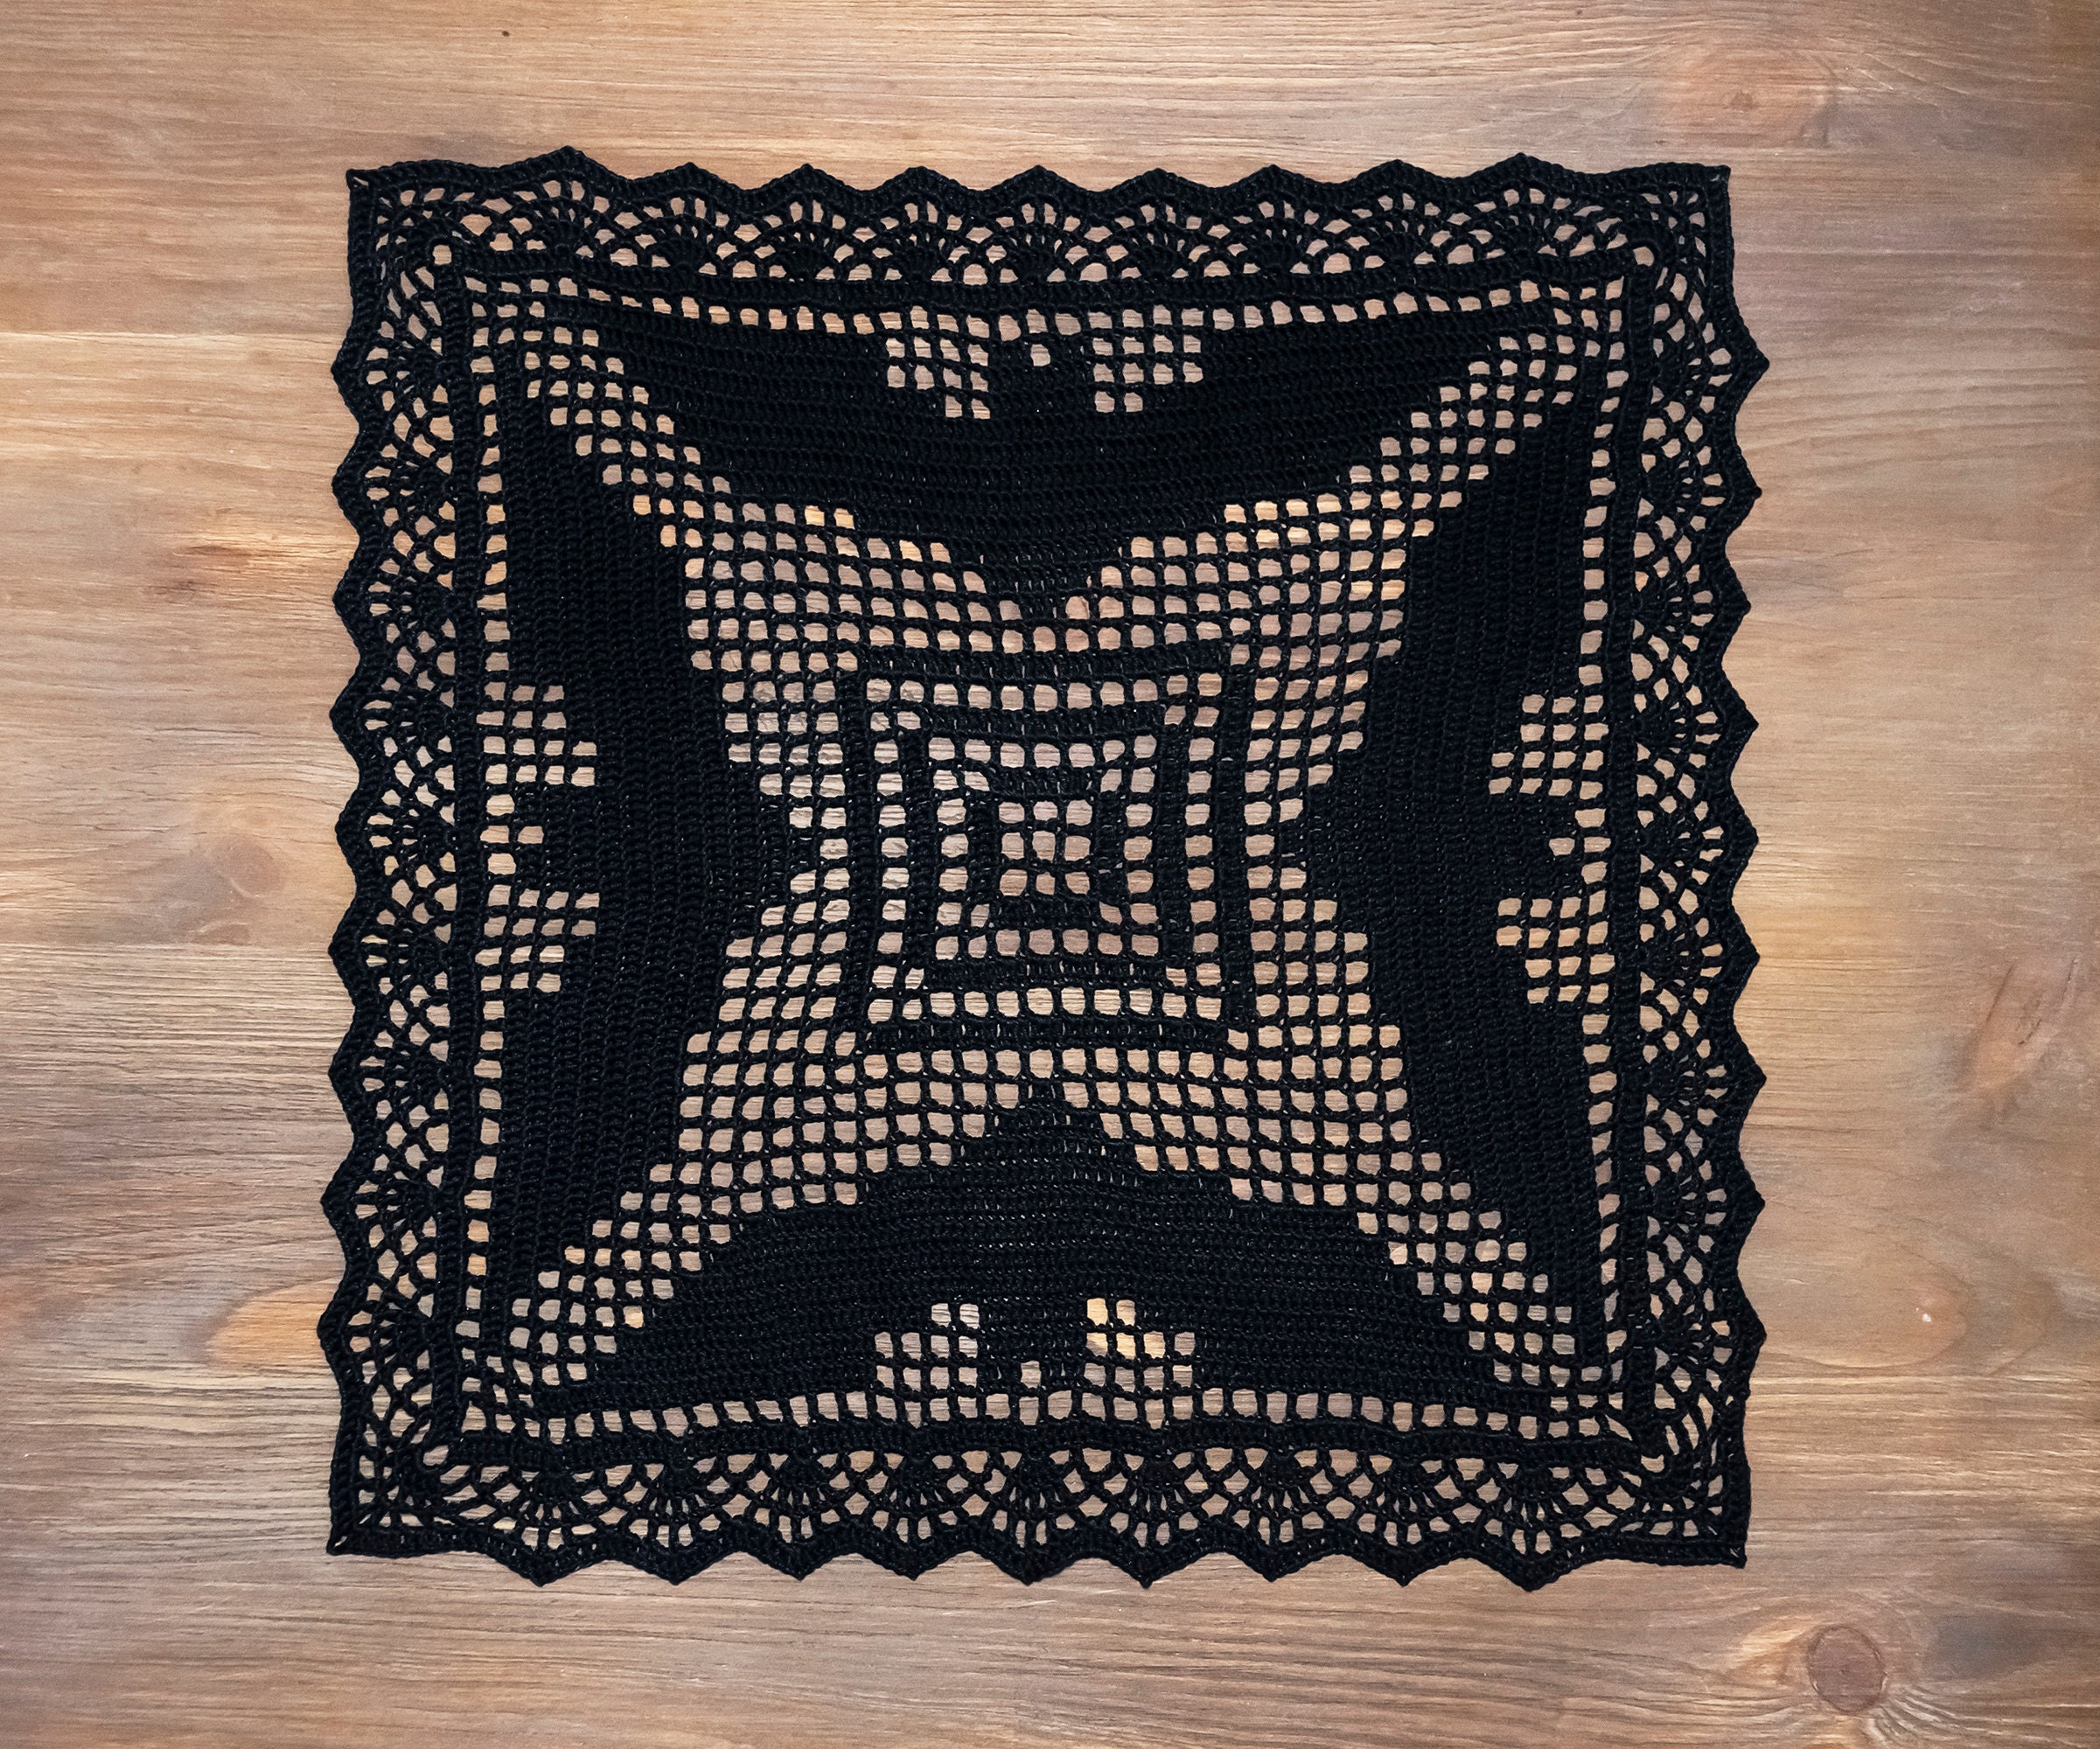 crochet carré noir doily avec des chauves-souris. décor d'halloween au crochet. de style gothique.